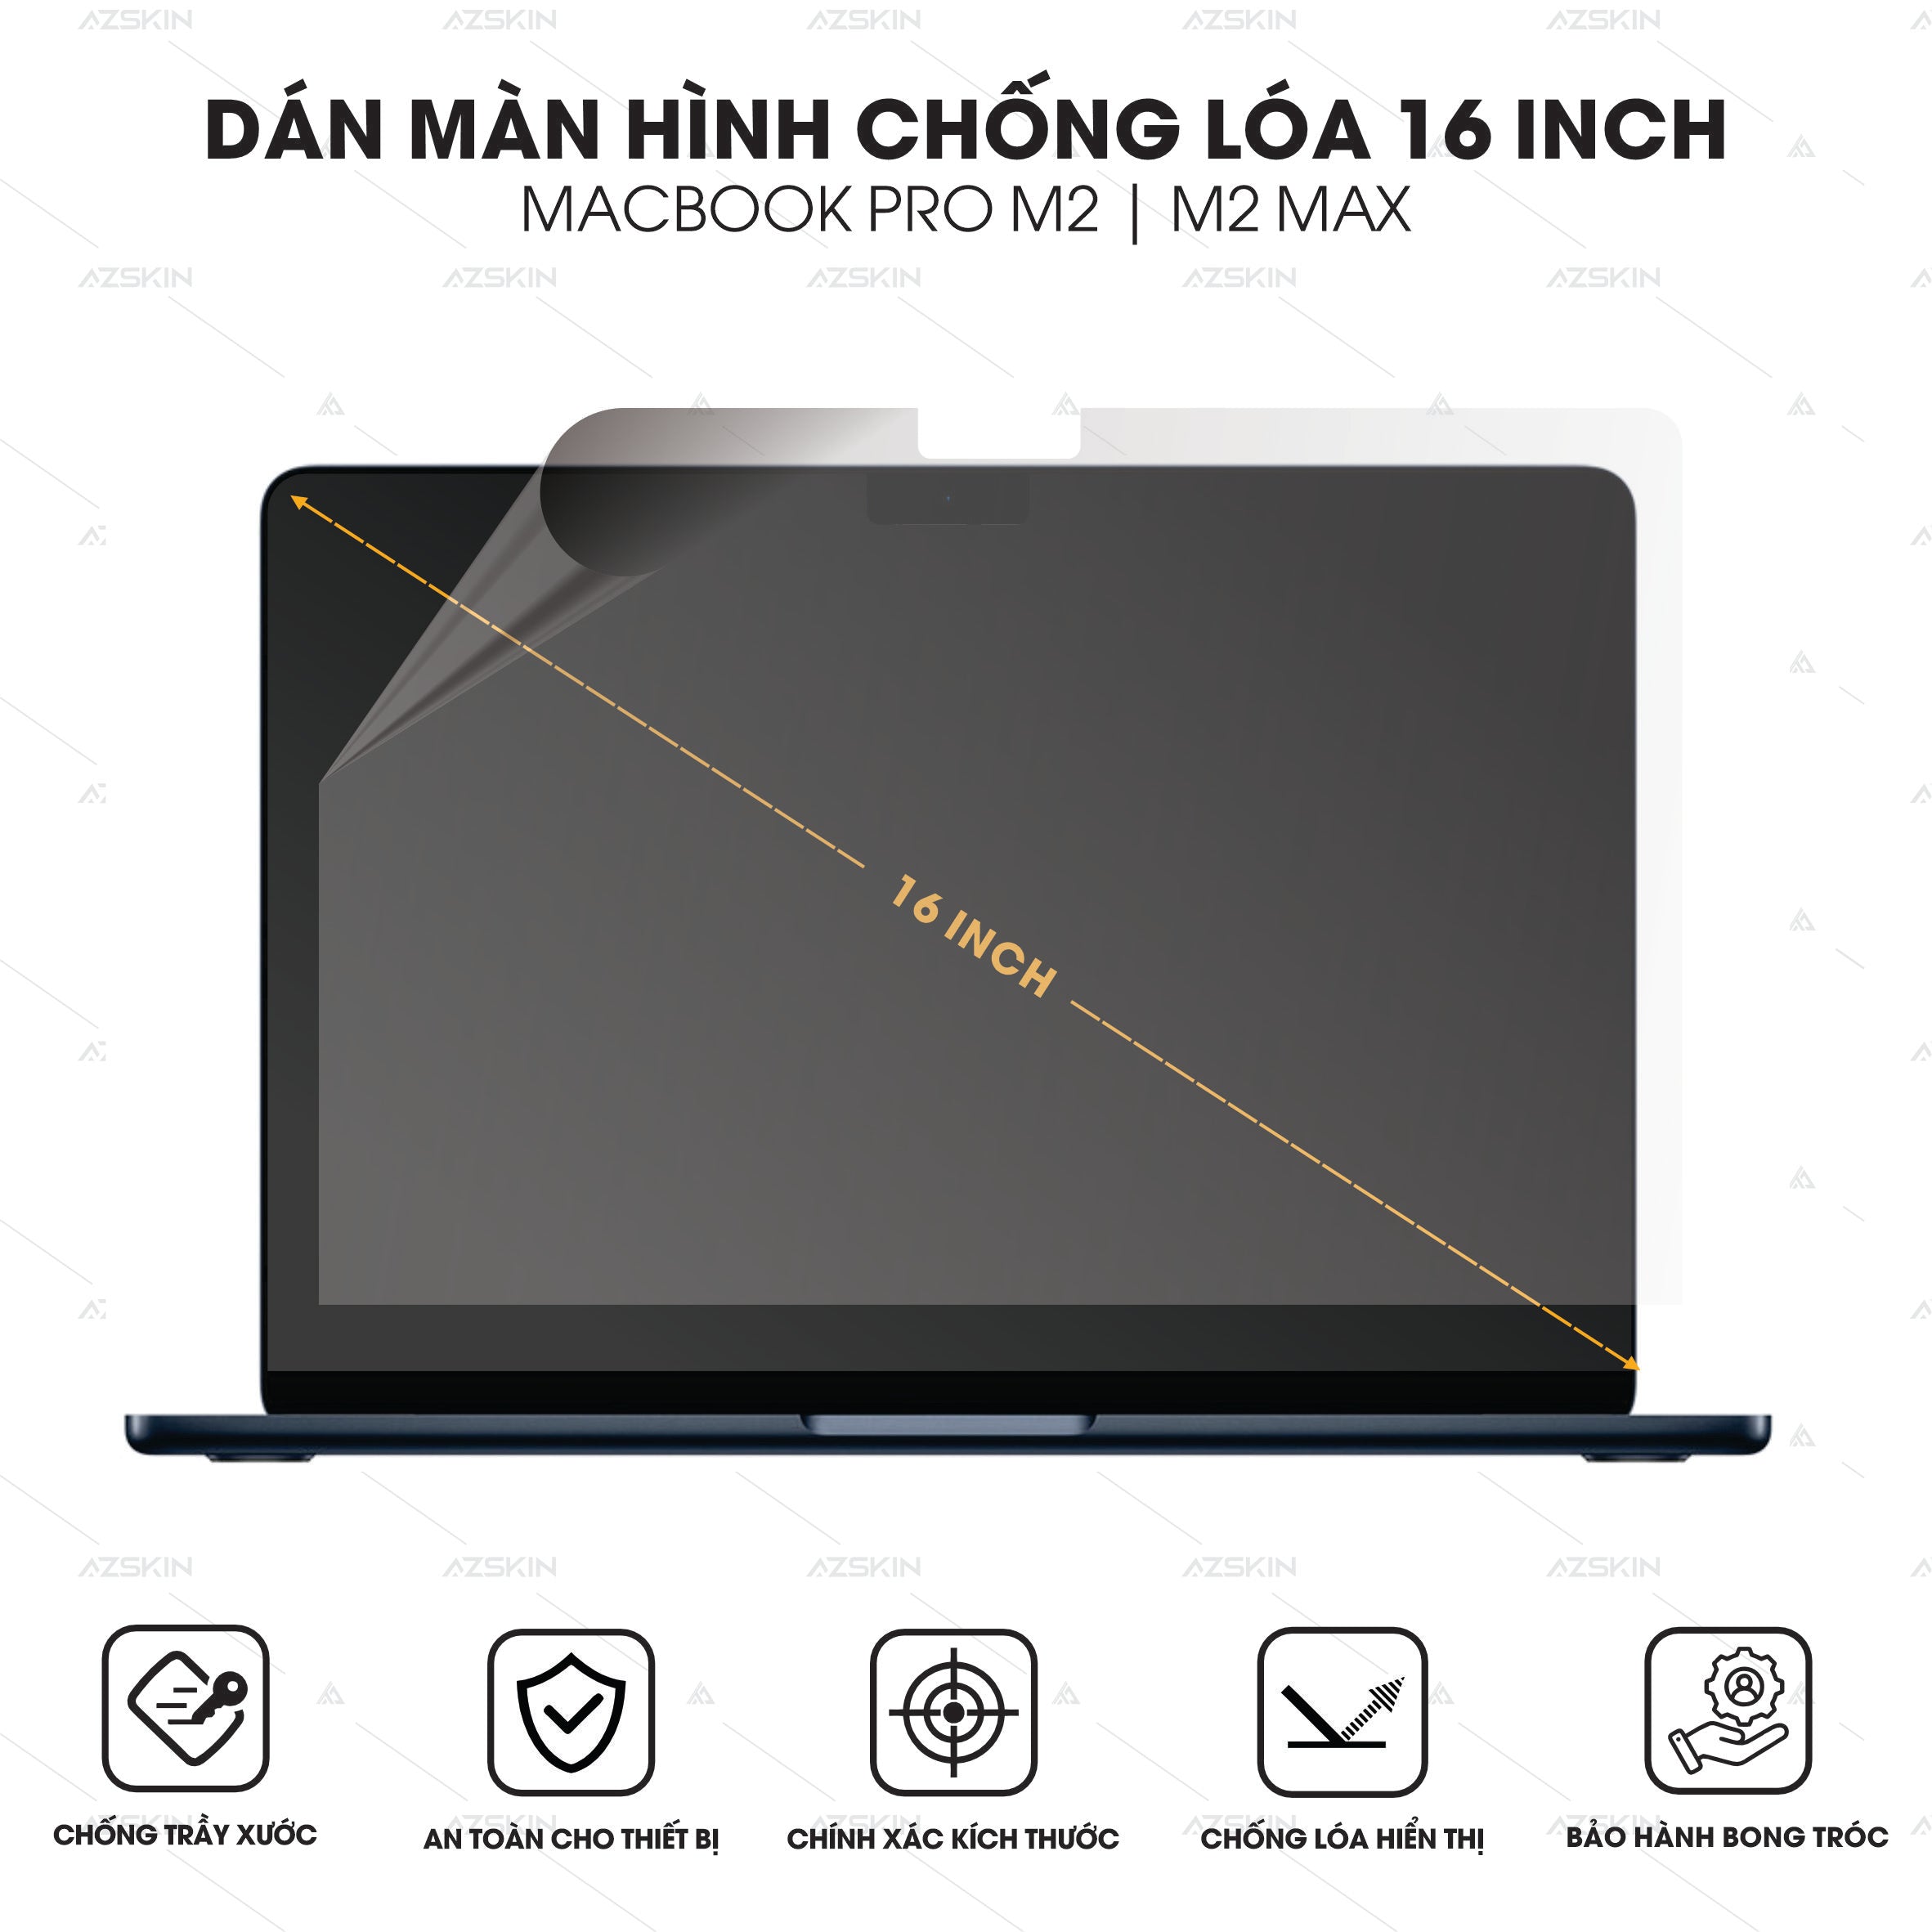 Miếng dán màn hình chống loá cho Macbook Pro M2 16 inch